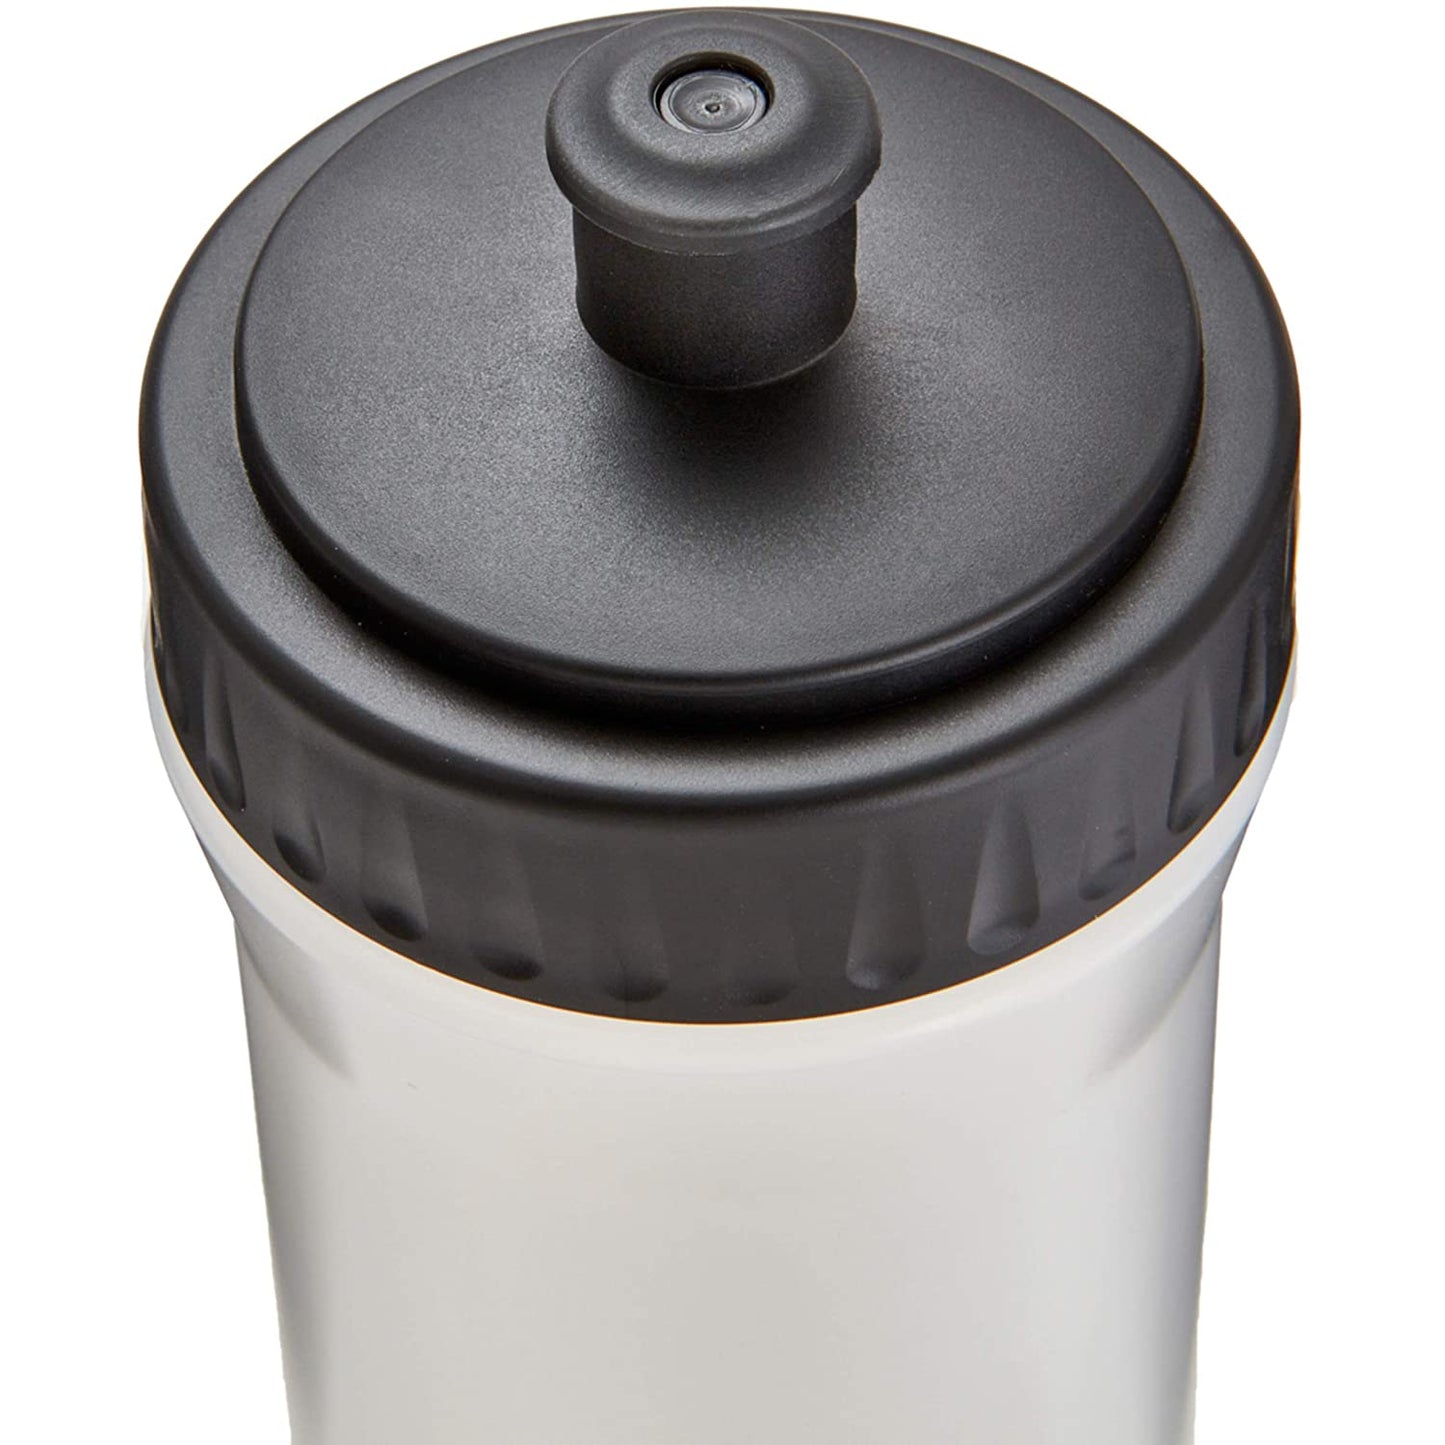 Reebok Water Bottle, Clear/Black - 500 ML - Best Price online Prokicksports.com